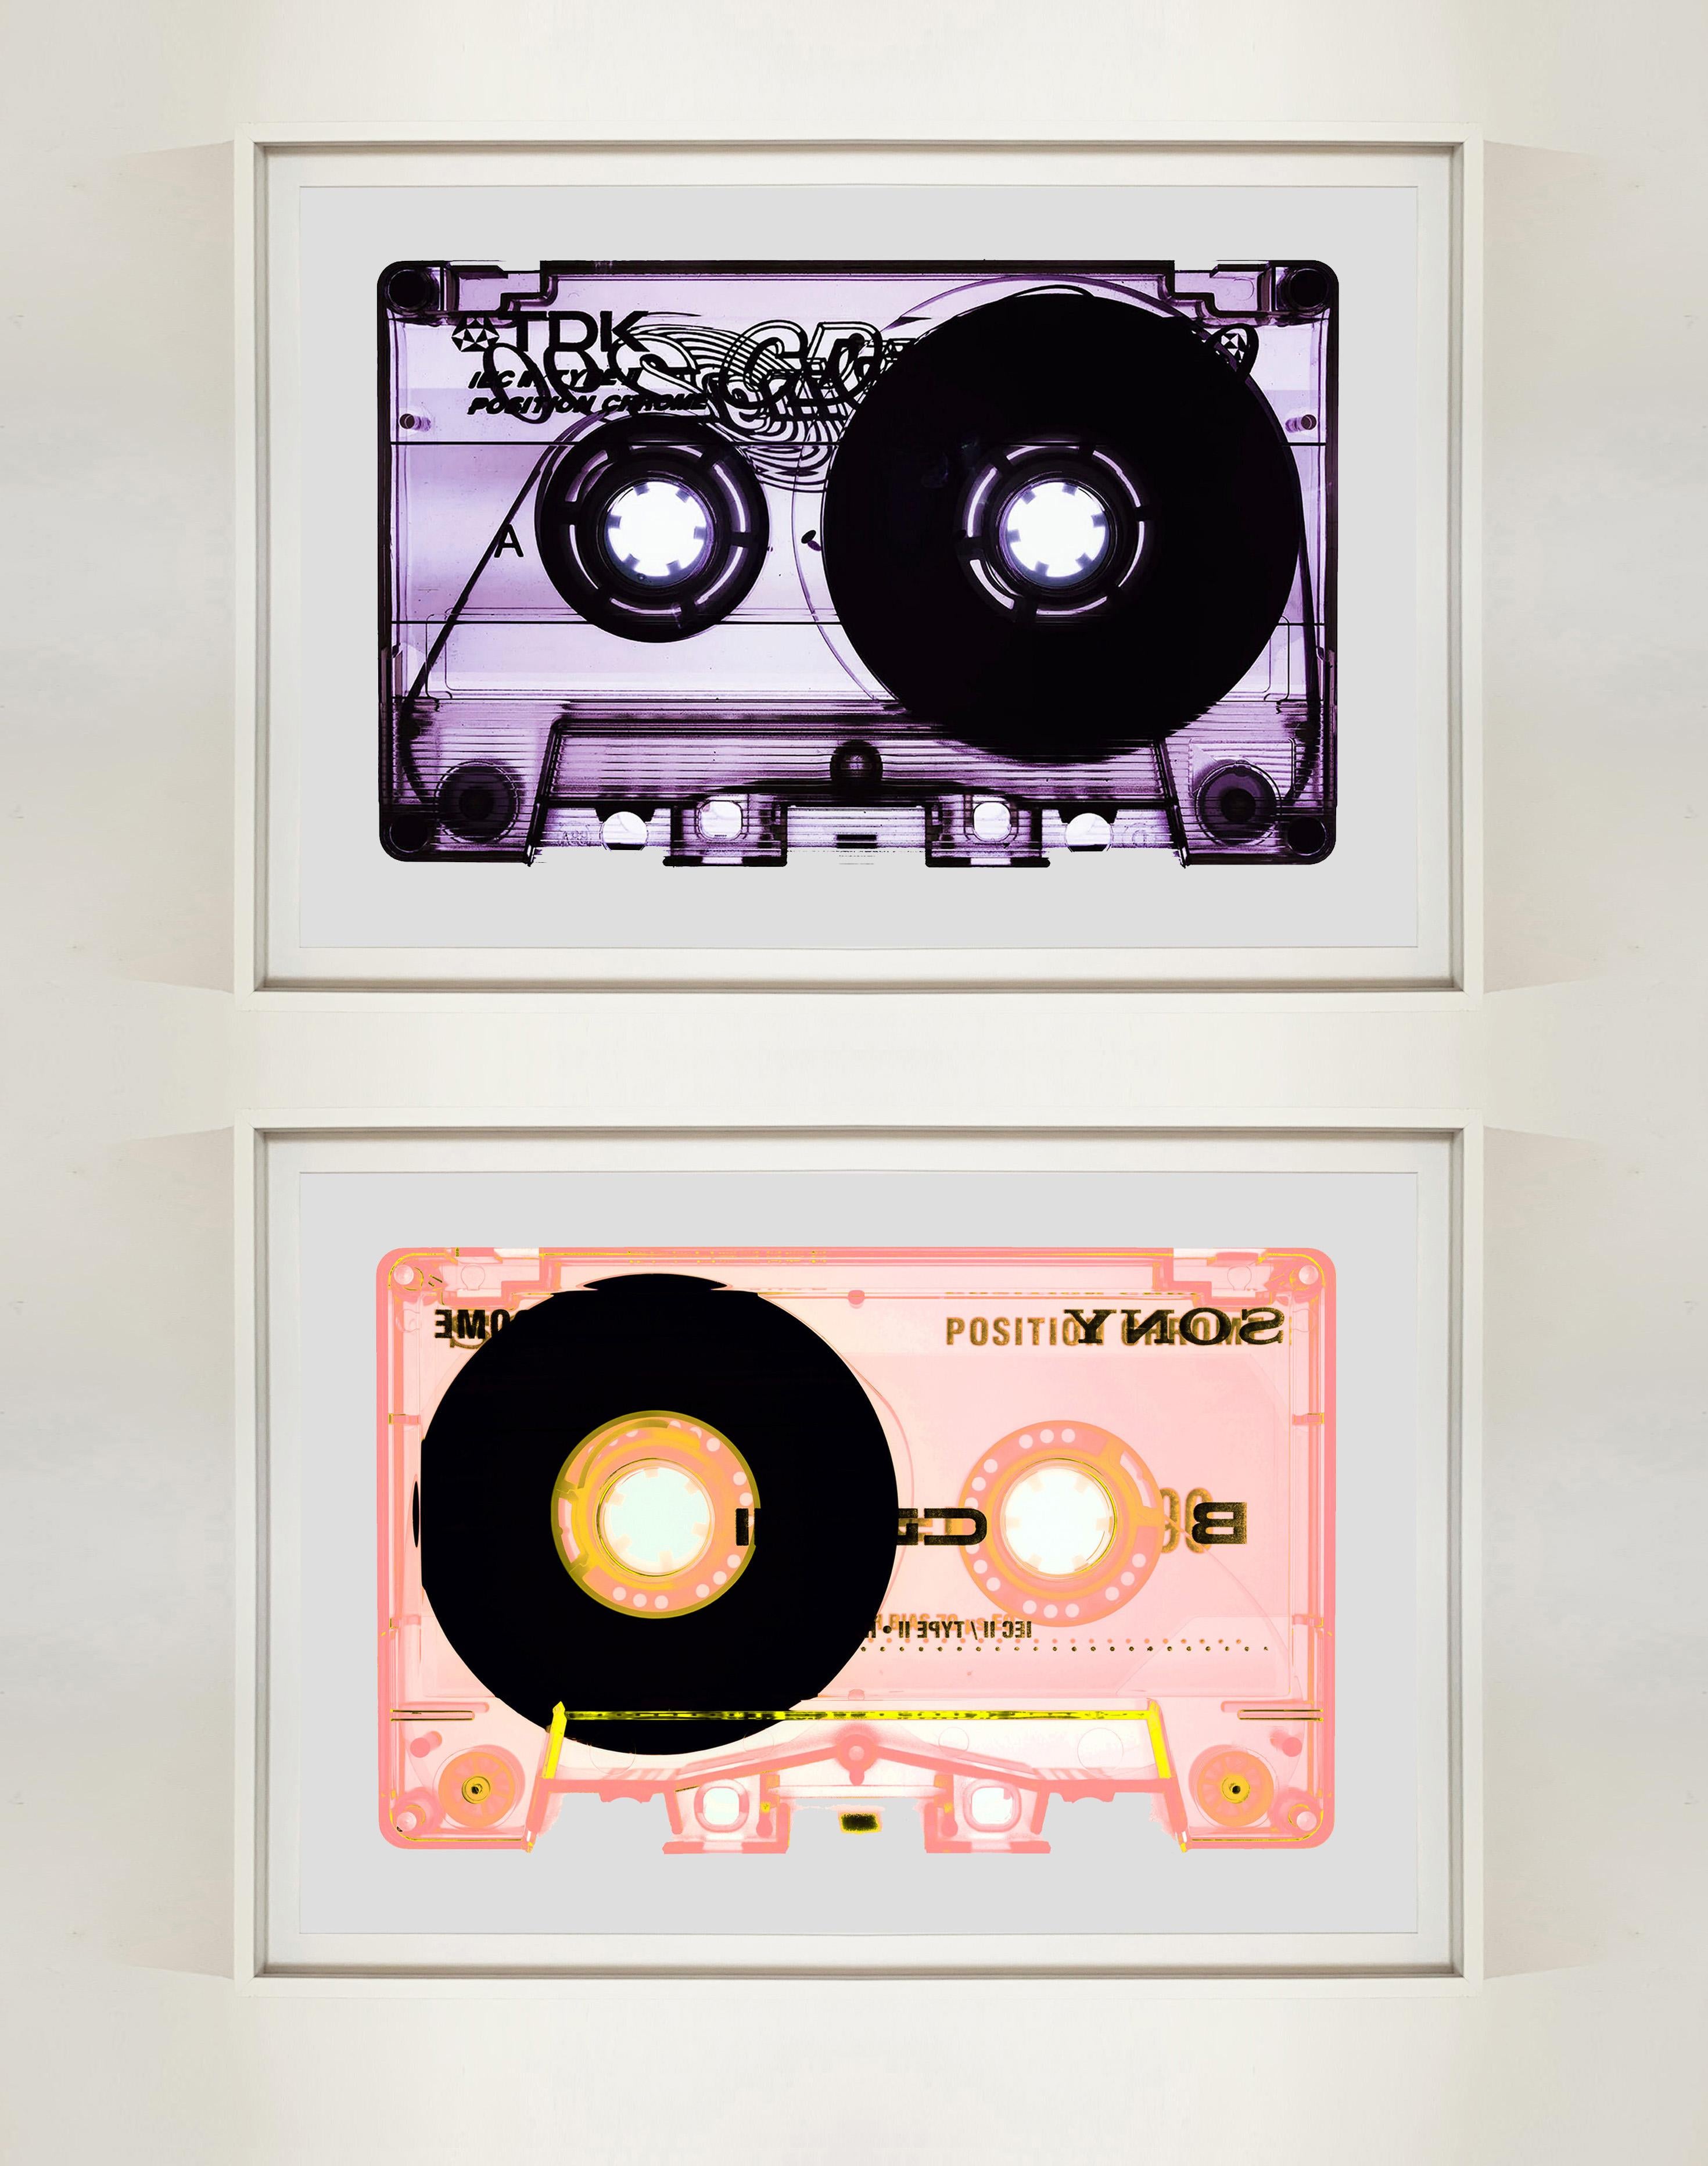 Typ II Tutti Frutti, aus der Heidler & Heeps Tape Collection - The B Sides.
Die Kollaborationen von Heidler & Heeps sind kreative Repräsentationen von Natasha Heidler und Richard Heeps' persönlicher Vergangenheit und ihrer Persönlichkeiten.